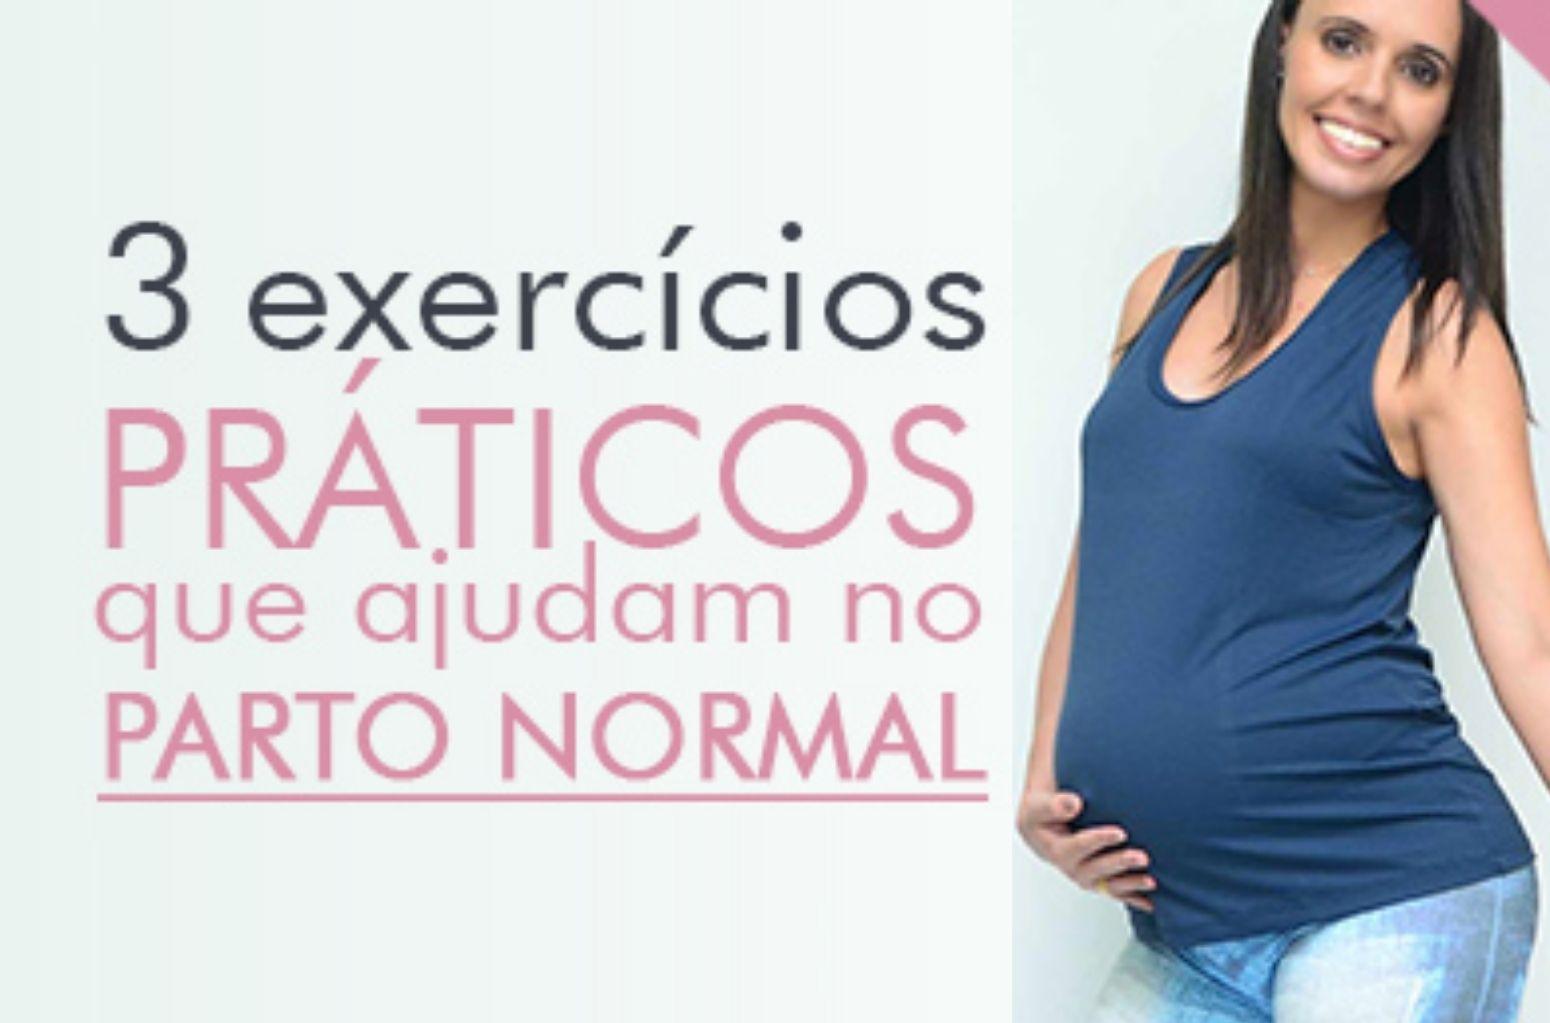 3 exercicios que ajudam no parto normal